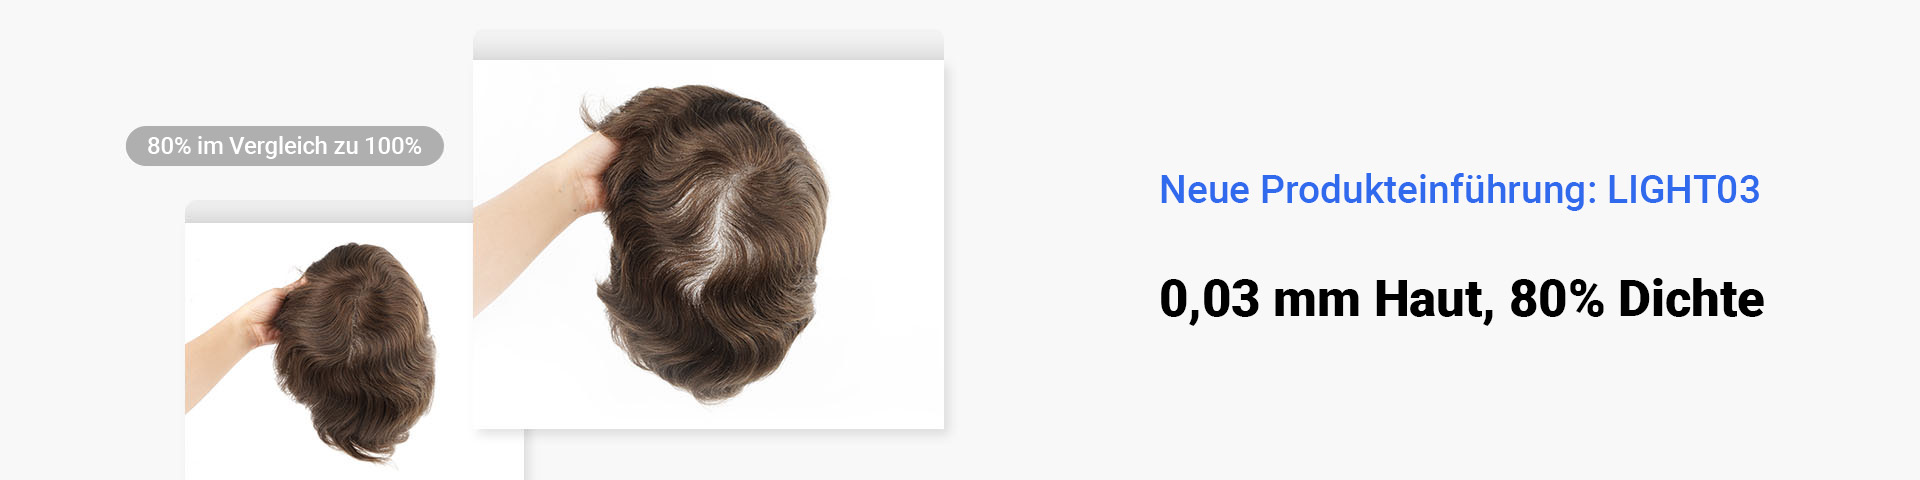 NewTimes Hair light03 stock toupee banner DE